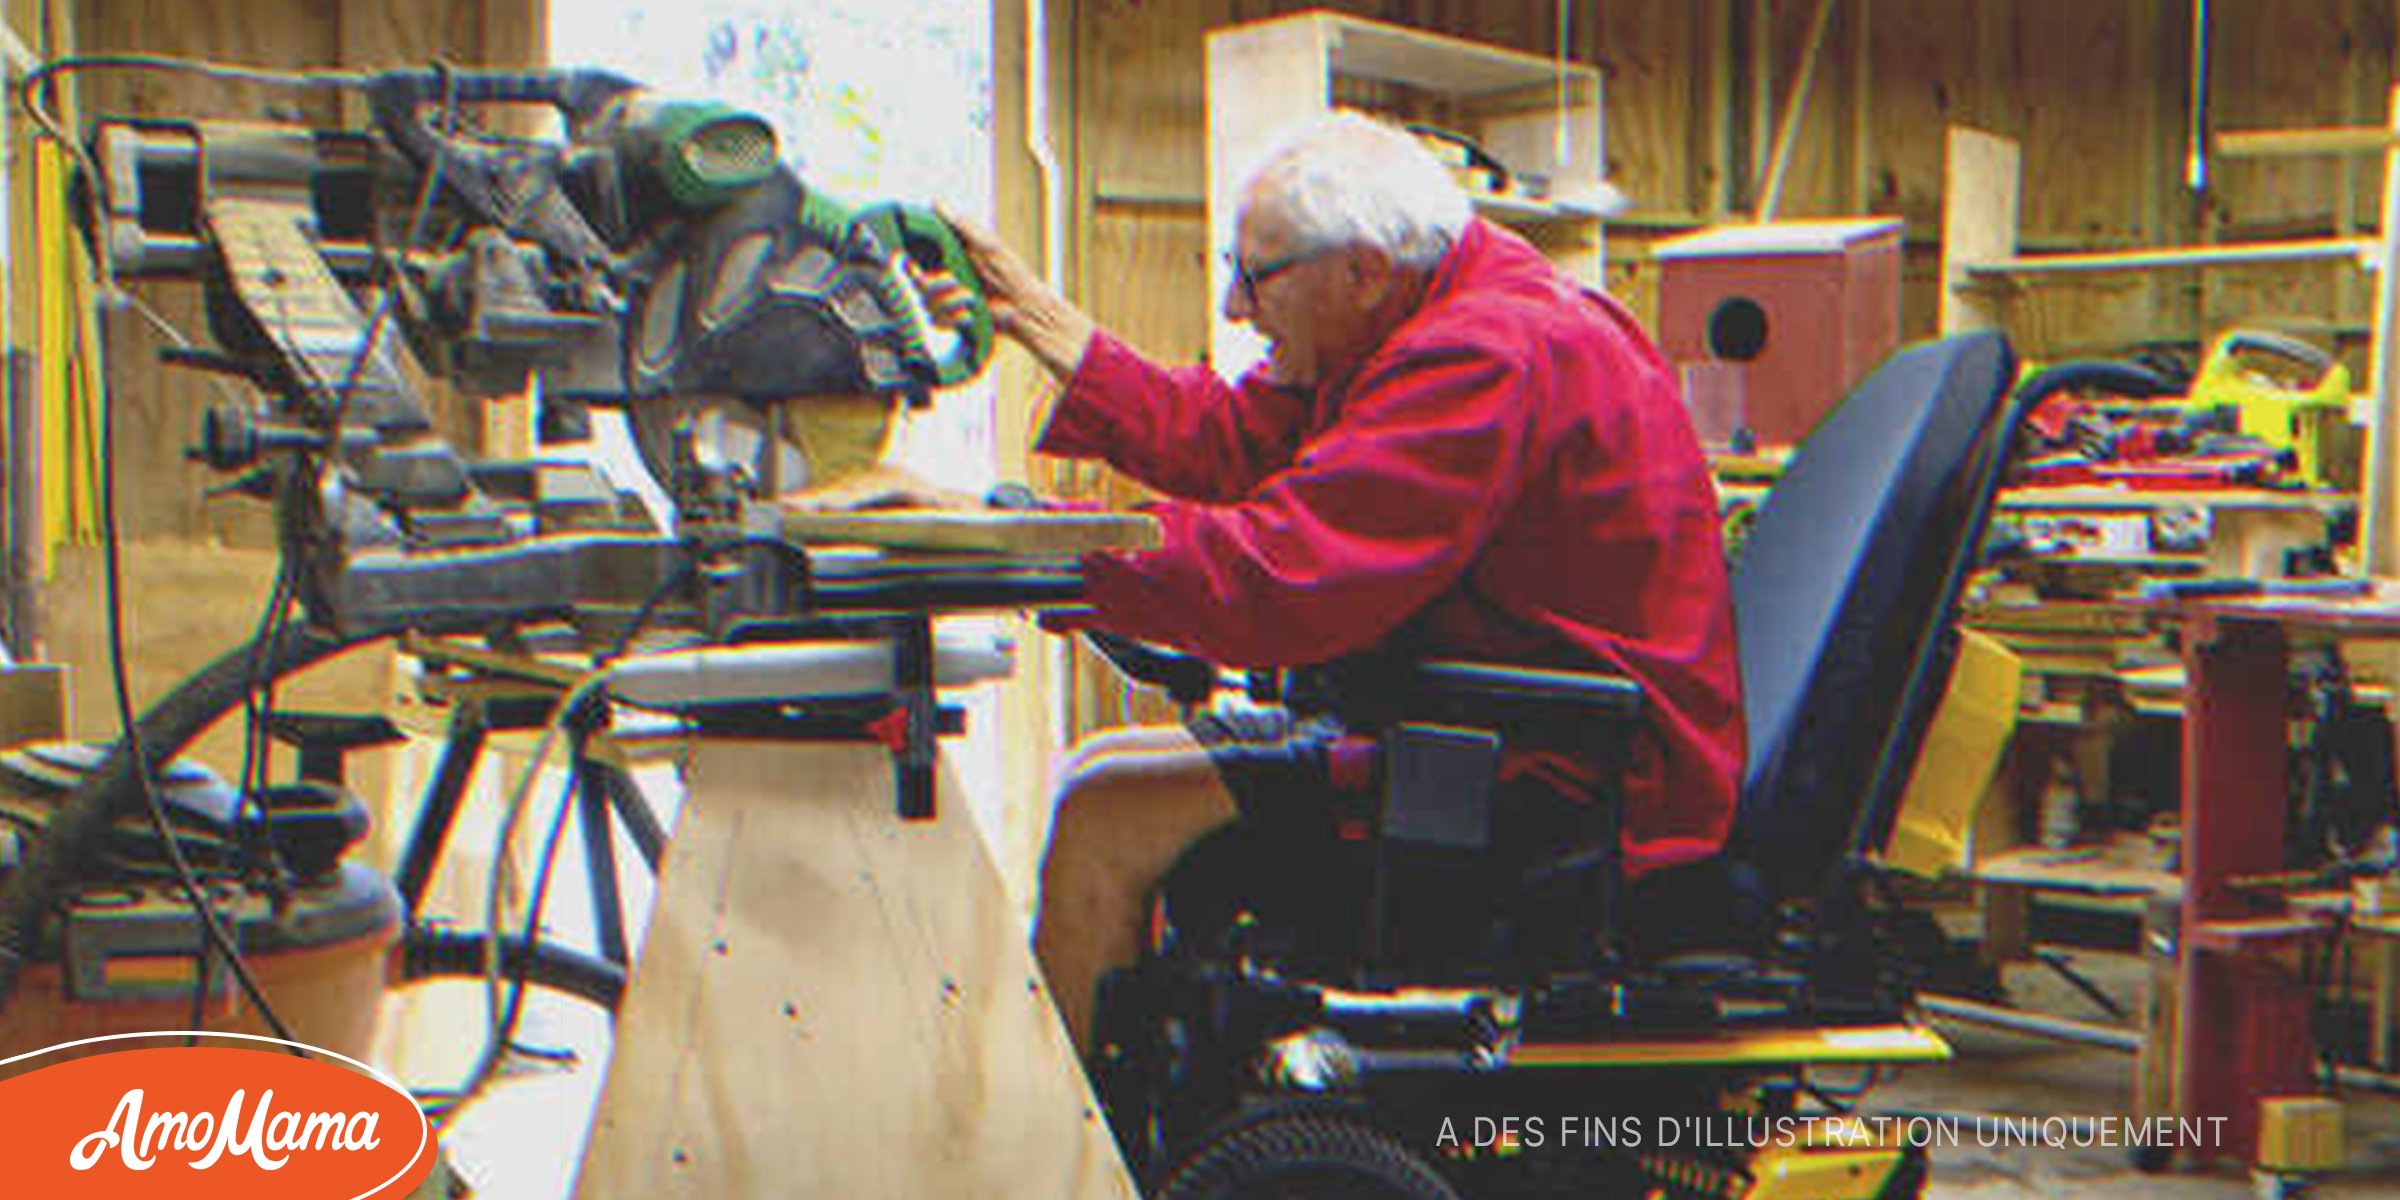 Un homme en fauteuil roulant qui travaille pour acheter un cadeau à sa femme reçoit le double de ce dont il a besoin – Histoire du jour